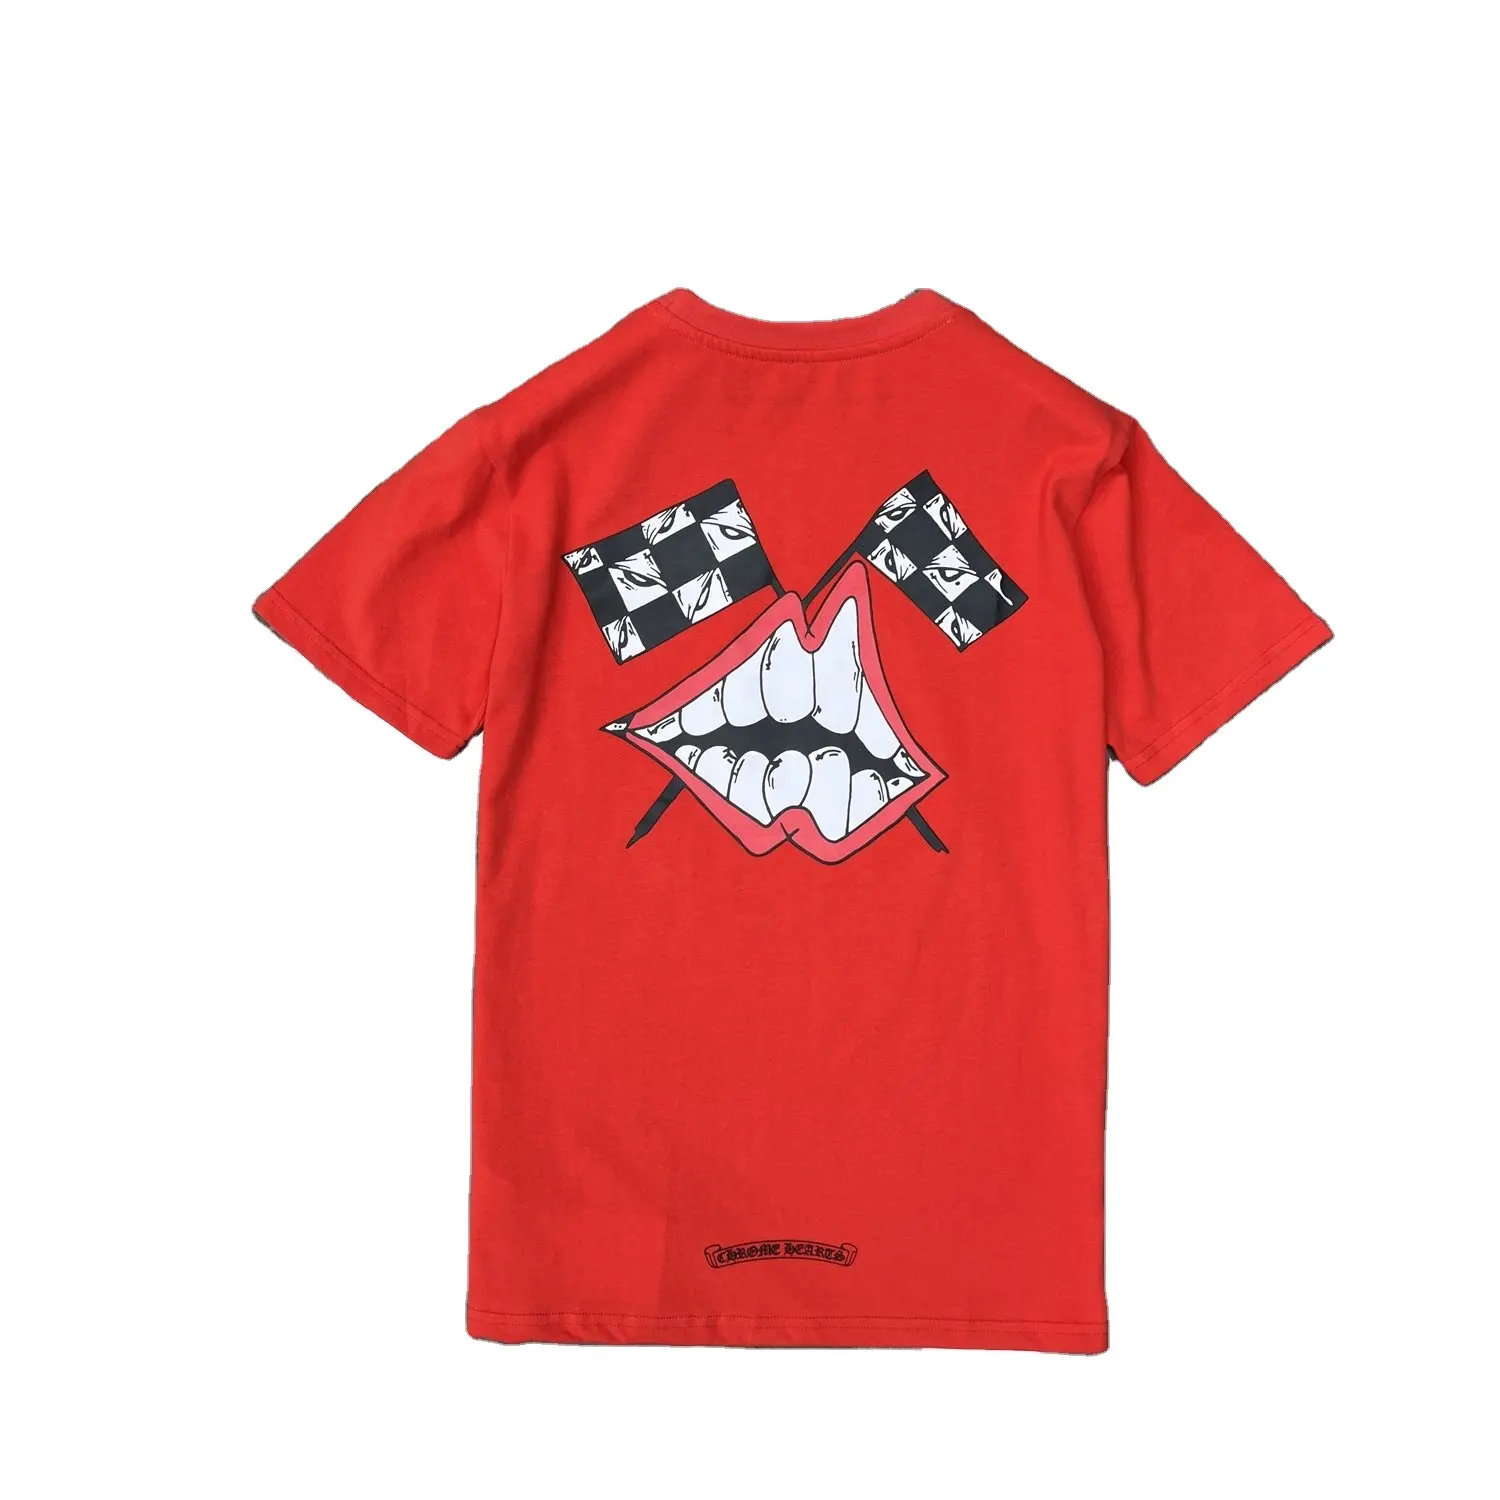 Sf8501 camiseta grande unissex, de alta qualidade, vermelha, com boca grafite, manga curta, coração, marca famosa, cromada